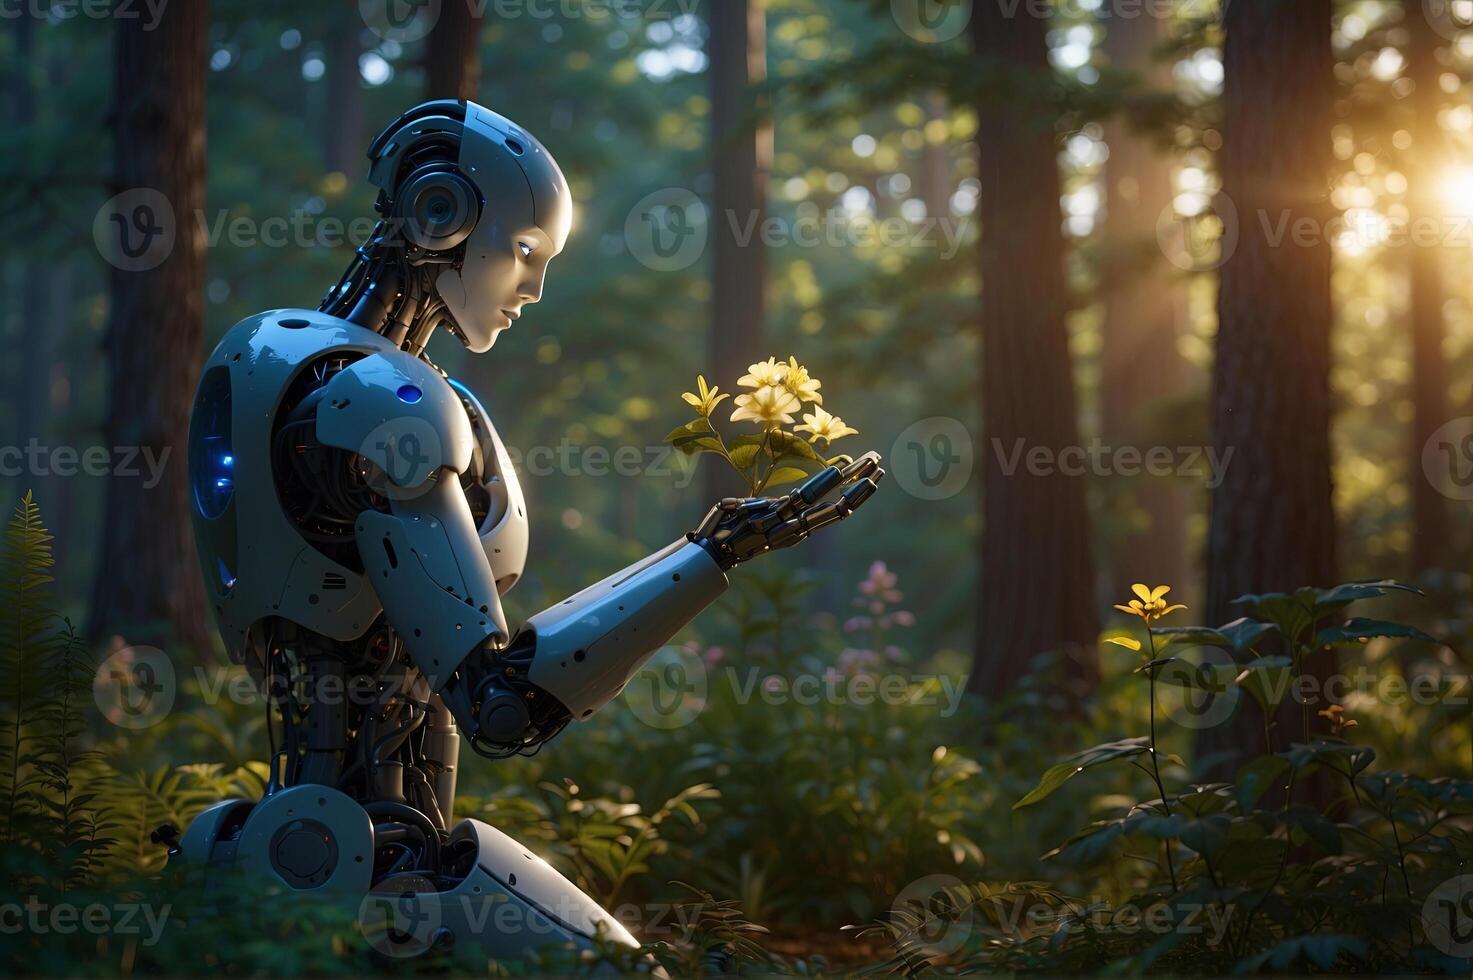 une humanoïde robotique s'agenouille et doucement détient dans mains à fleurs. vert forêt clairière, entouré par des arbres avec d'or lumière du soleil. écologie, technologie, paix, la coopération concept photo